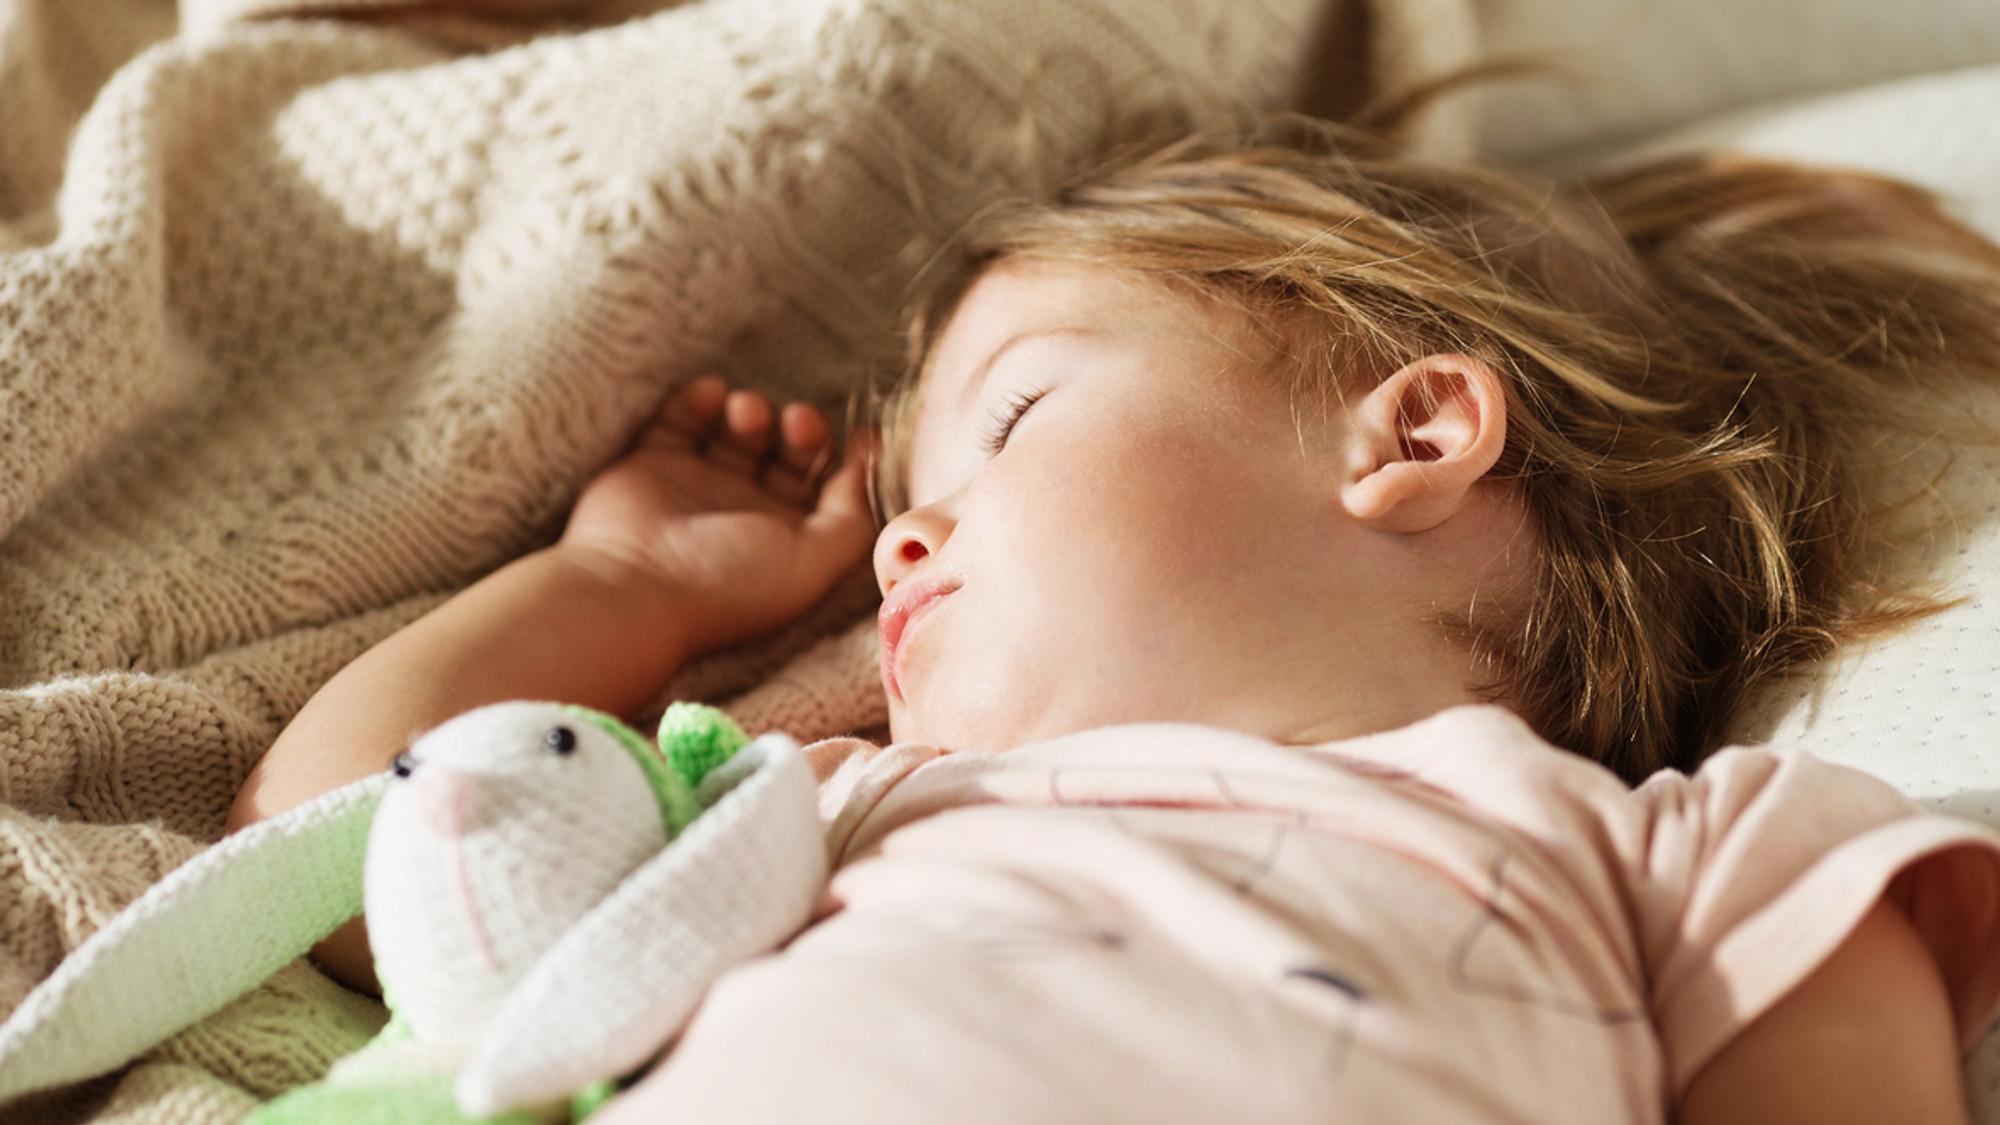 Klingelhose - der Urin-Alarm gegen Bettnässen - Eltern, Baby, Kind und mehr